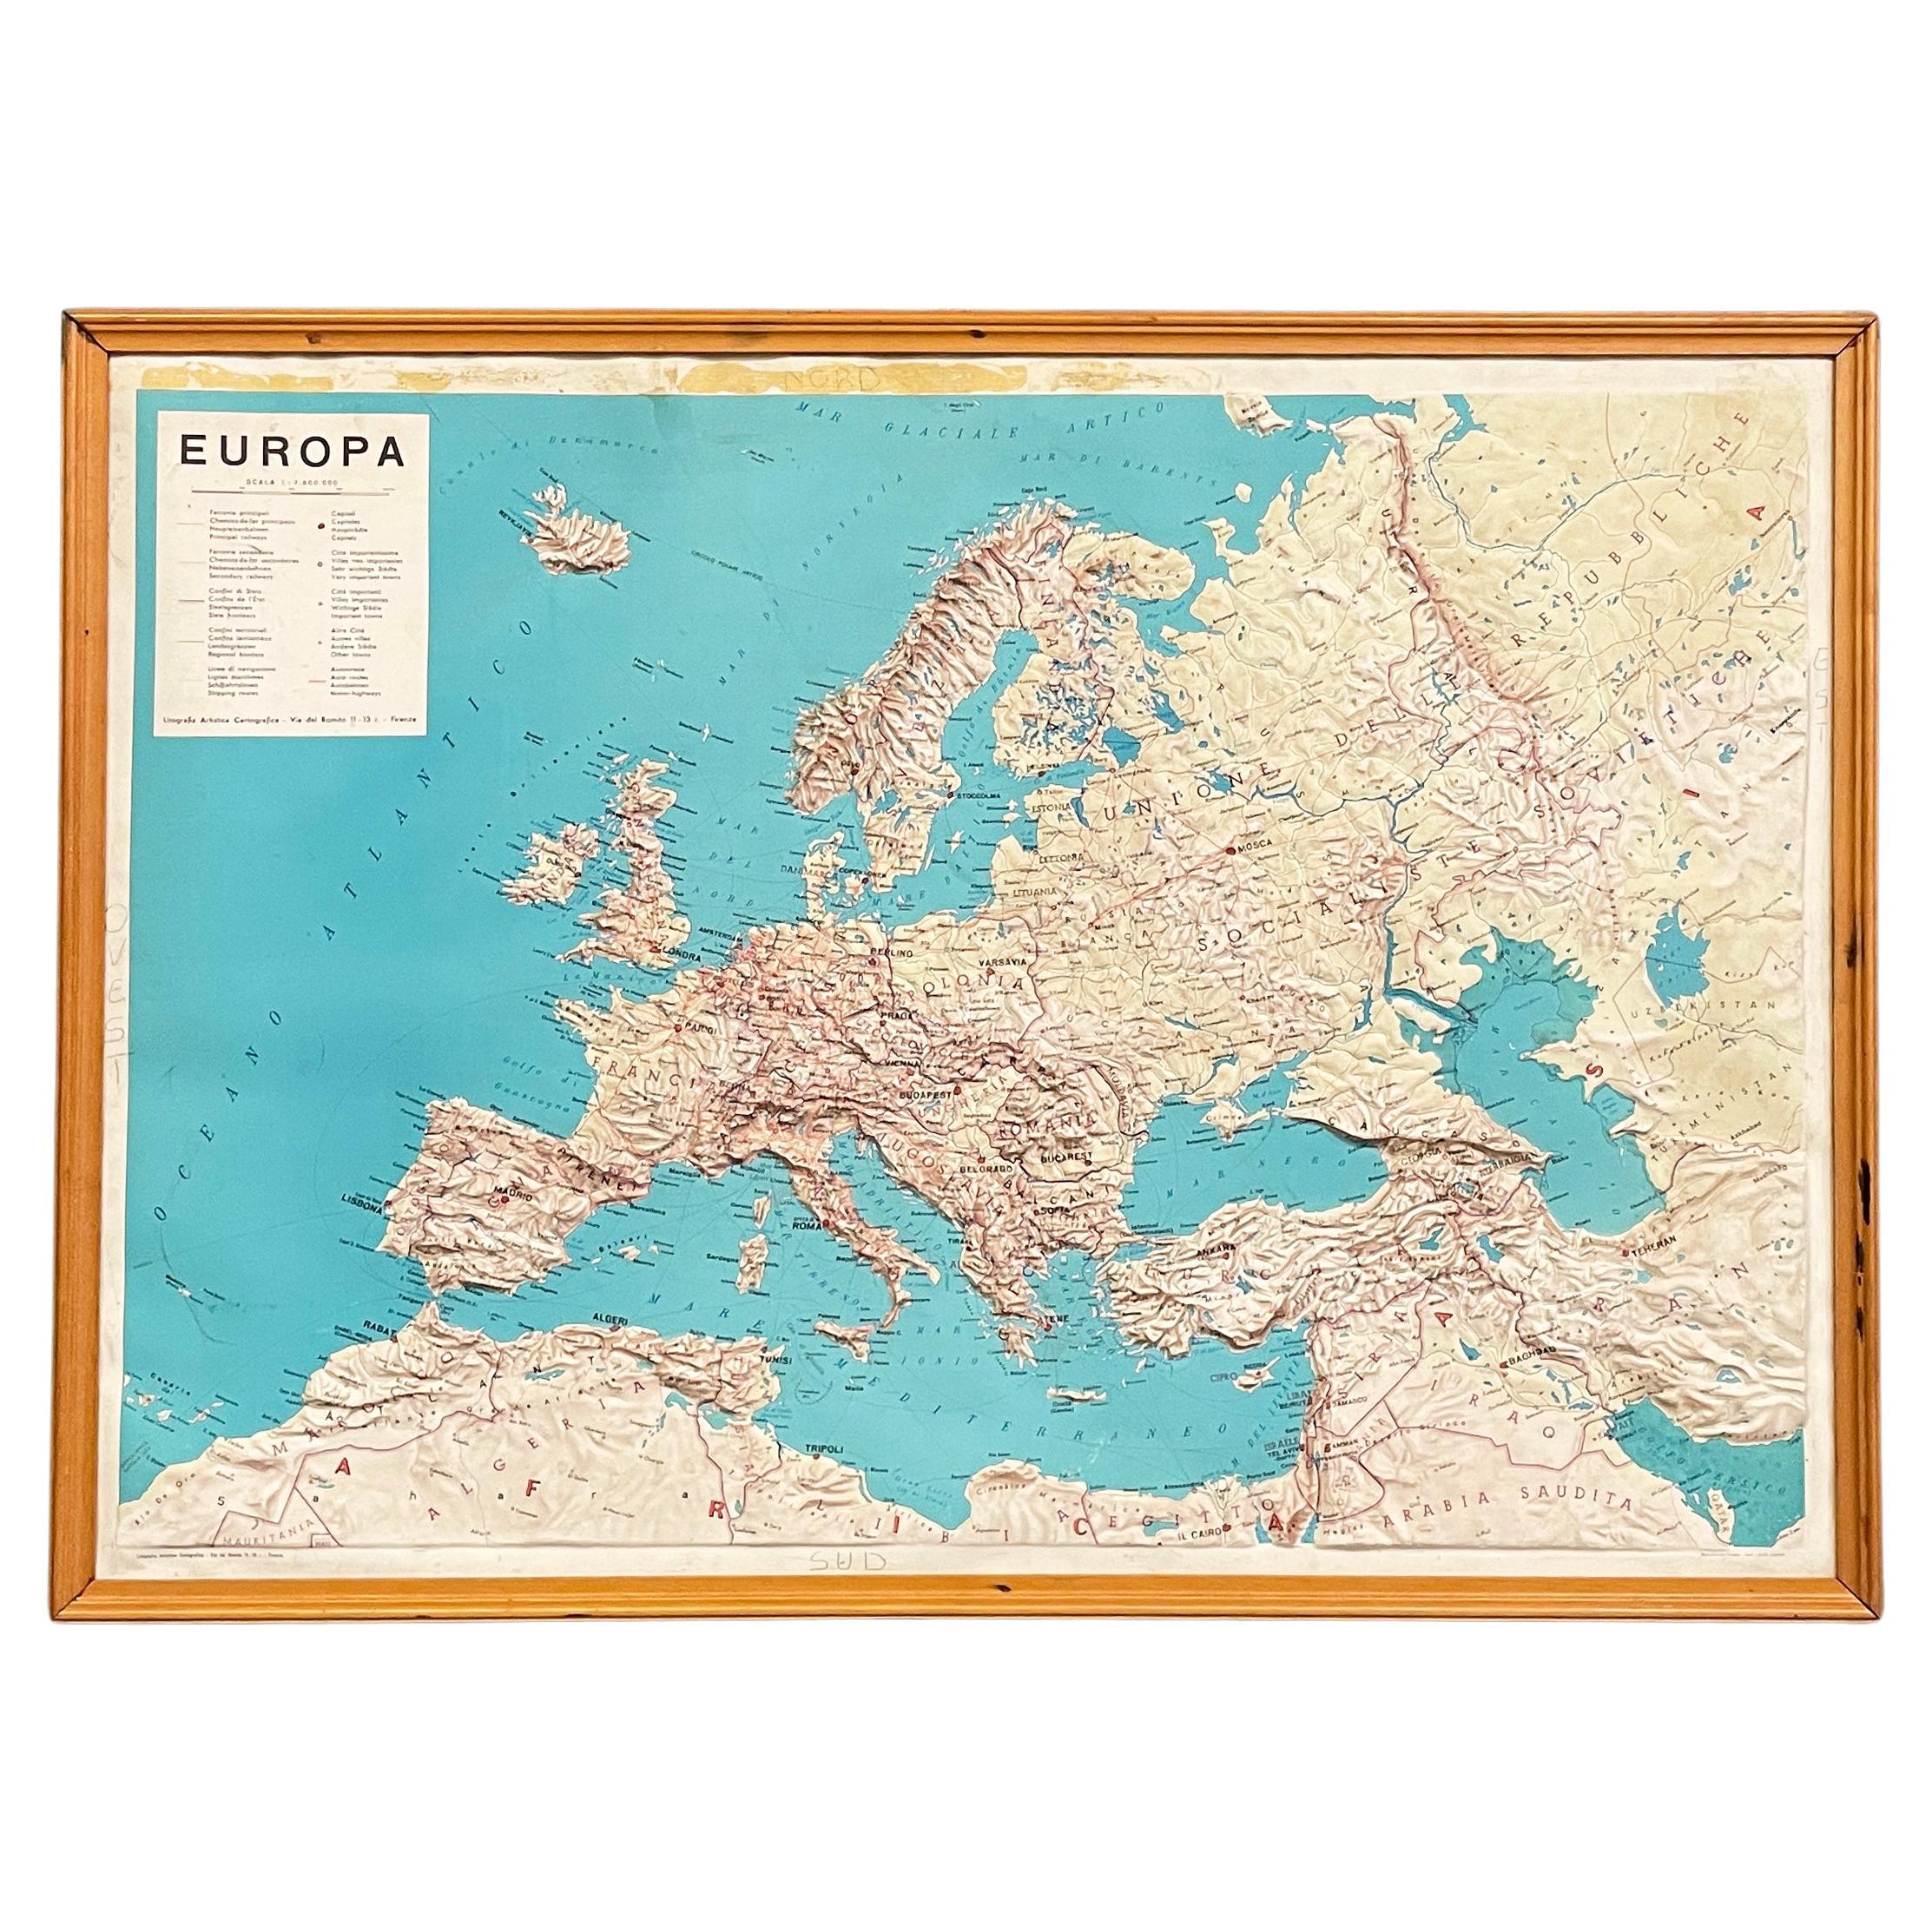 Carte géographique topographique italienne moderne de l'Europe dans un cadre en bois, années 1950-1990